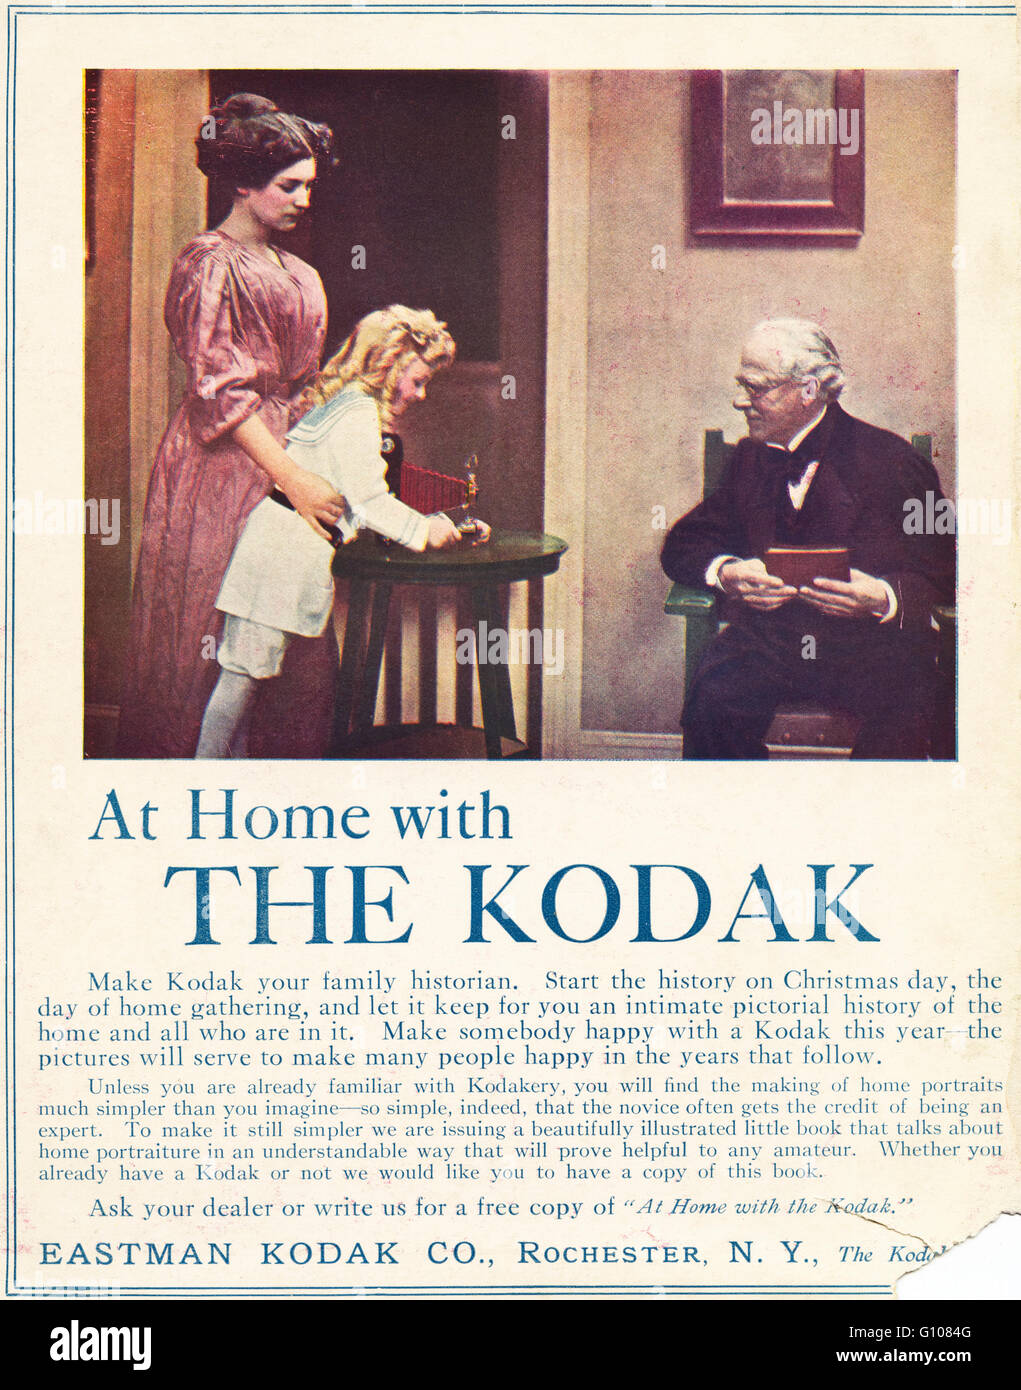 Originale vecchia vintage rivista americana in piena pagina a colori un annuncio da un'epoca edoardiana datata 1910. Pubblicità Pubblicità pellicola Kodak fotocamere & da Eastman Kodak di Rochester New York STATI UNITI D'AMERICA Foto Stock